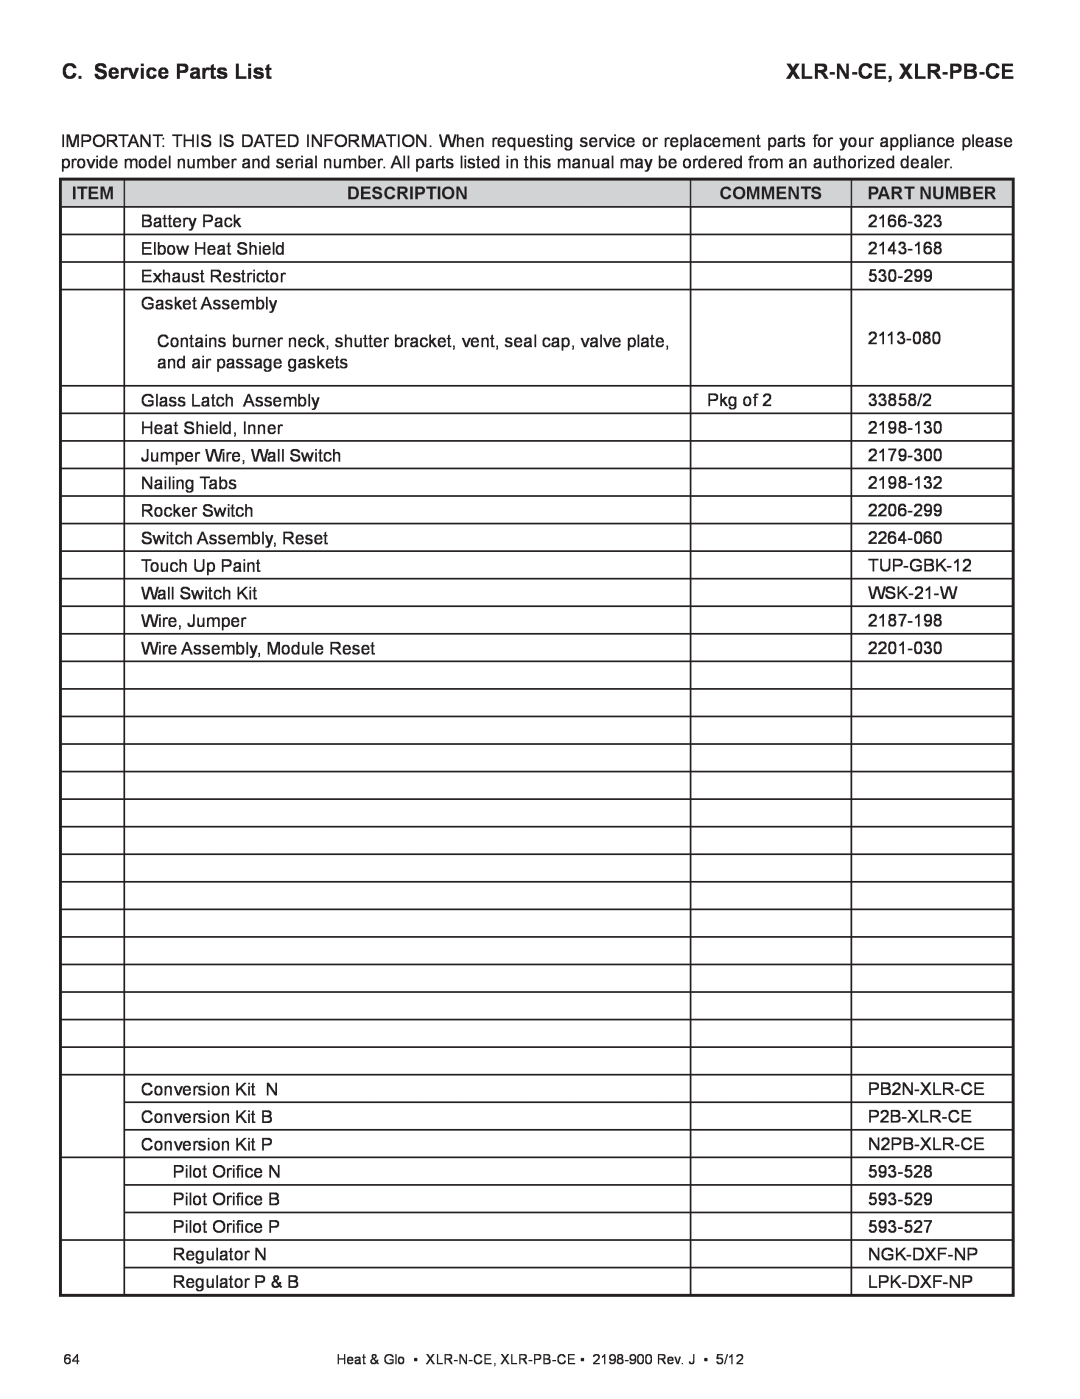 Heat & Glo LifeStyle XLR-N-CE, XLR-PB-CE C. Service Parts List, Xlr-N-Ce, Xlr-Pb-Ce, Description, Comments, Part Number 